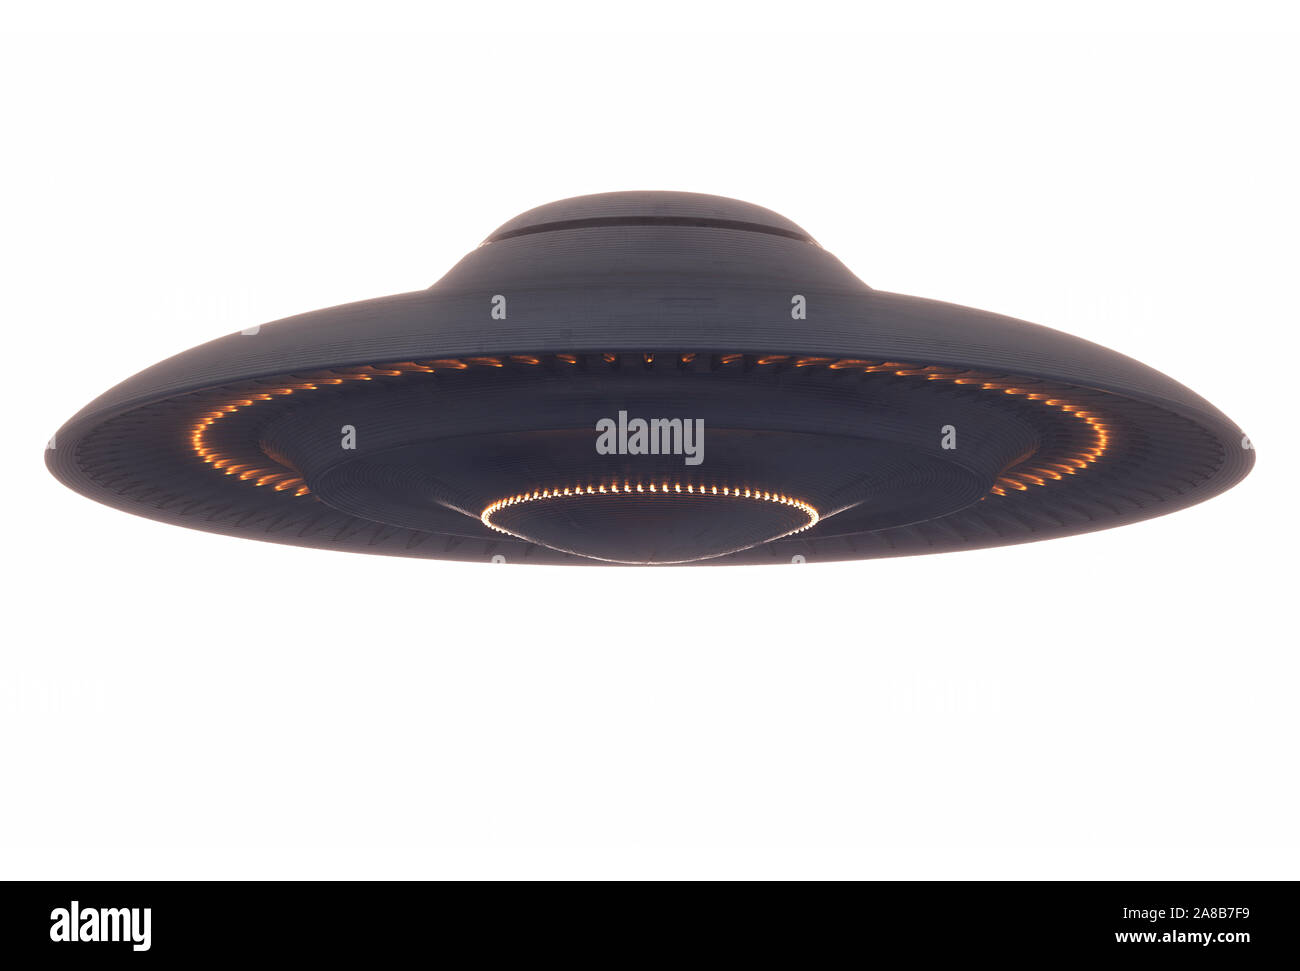 Oggetto Volante non Identificato UFO con percorso di clipping incluso. 3D'illustrazione. Foto Stock